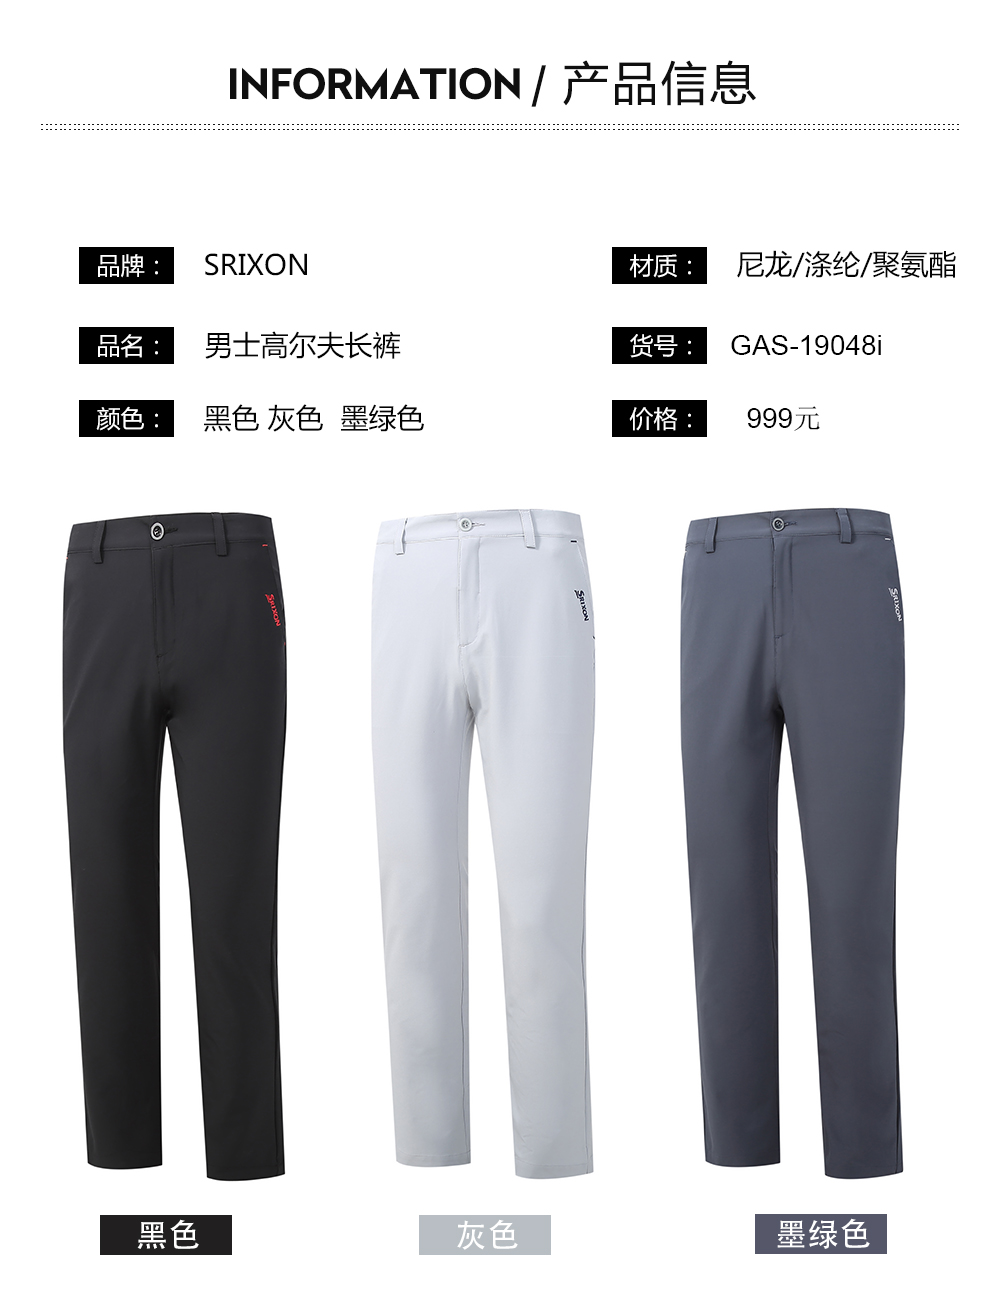 Srixon史力胜高尔夫服装男士长裤golf透气运动休闲裤夏季薄款服装